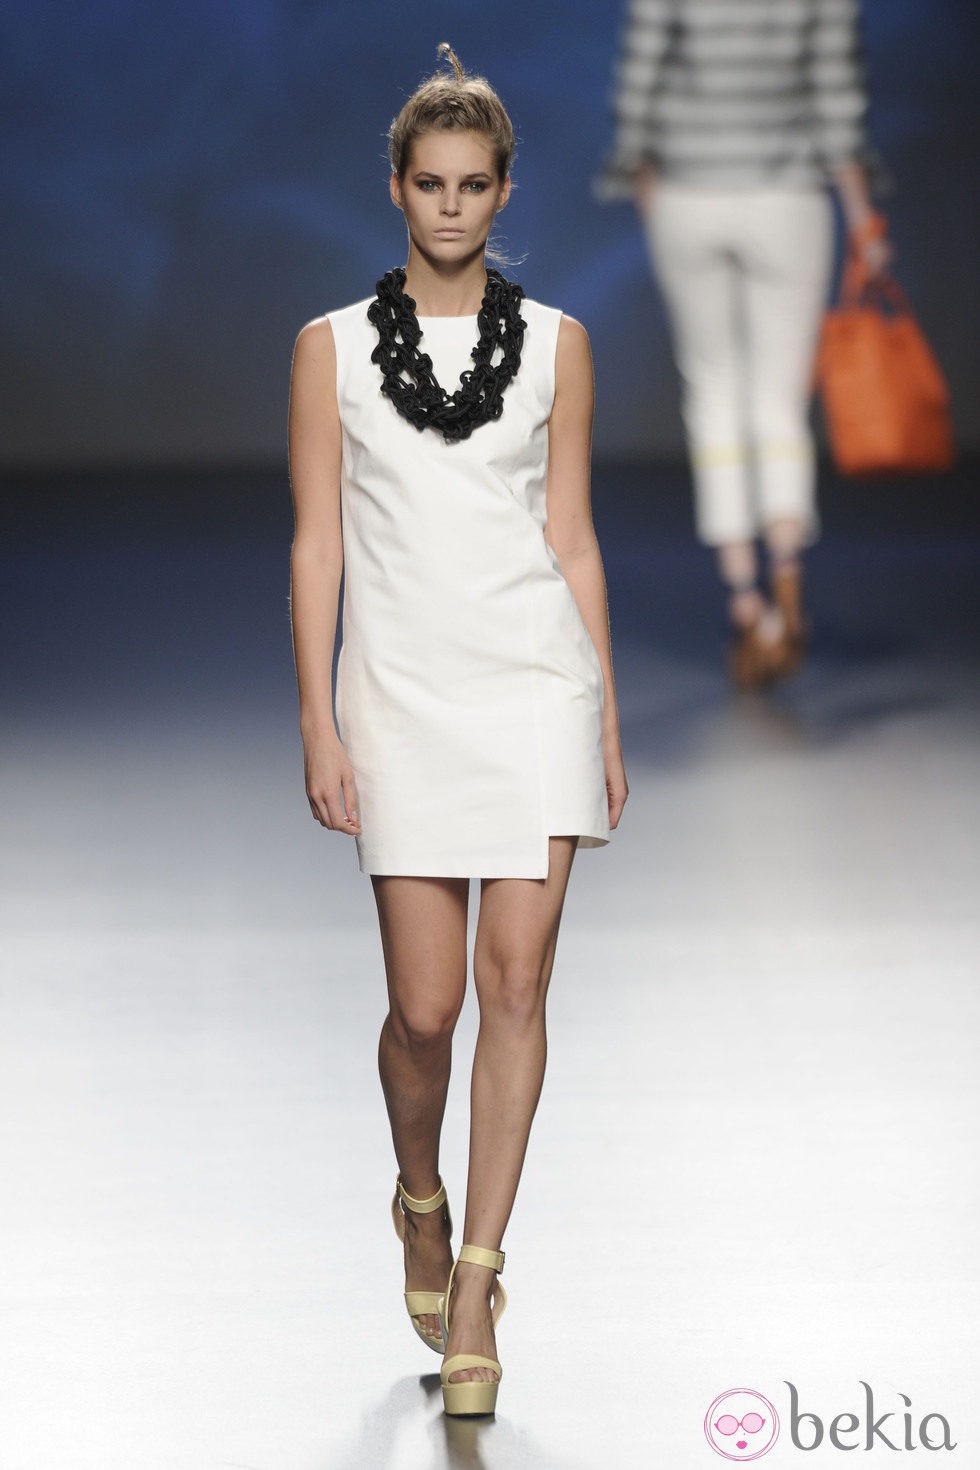 Vestido corto blanco y collar negro de la colección primavera/verano 2013 de Sara Coleman